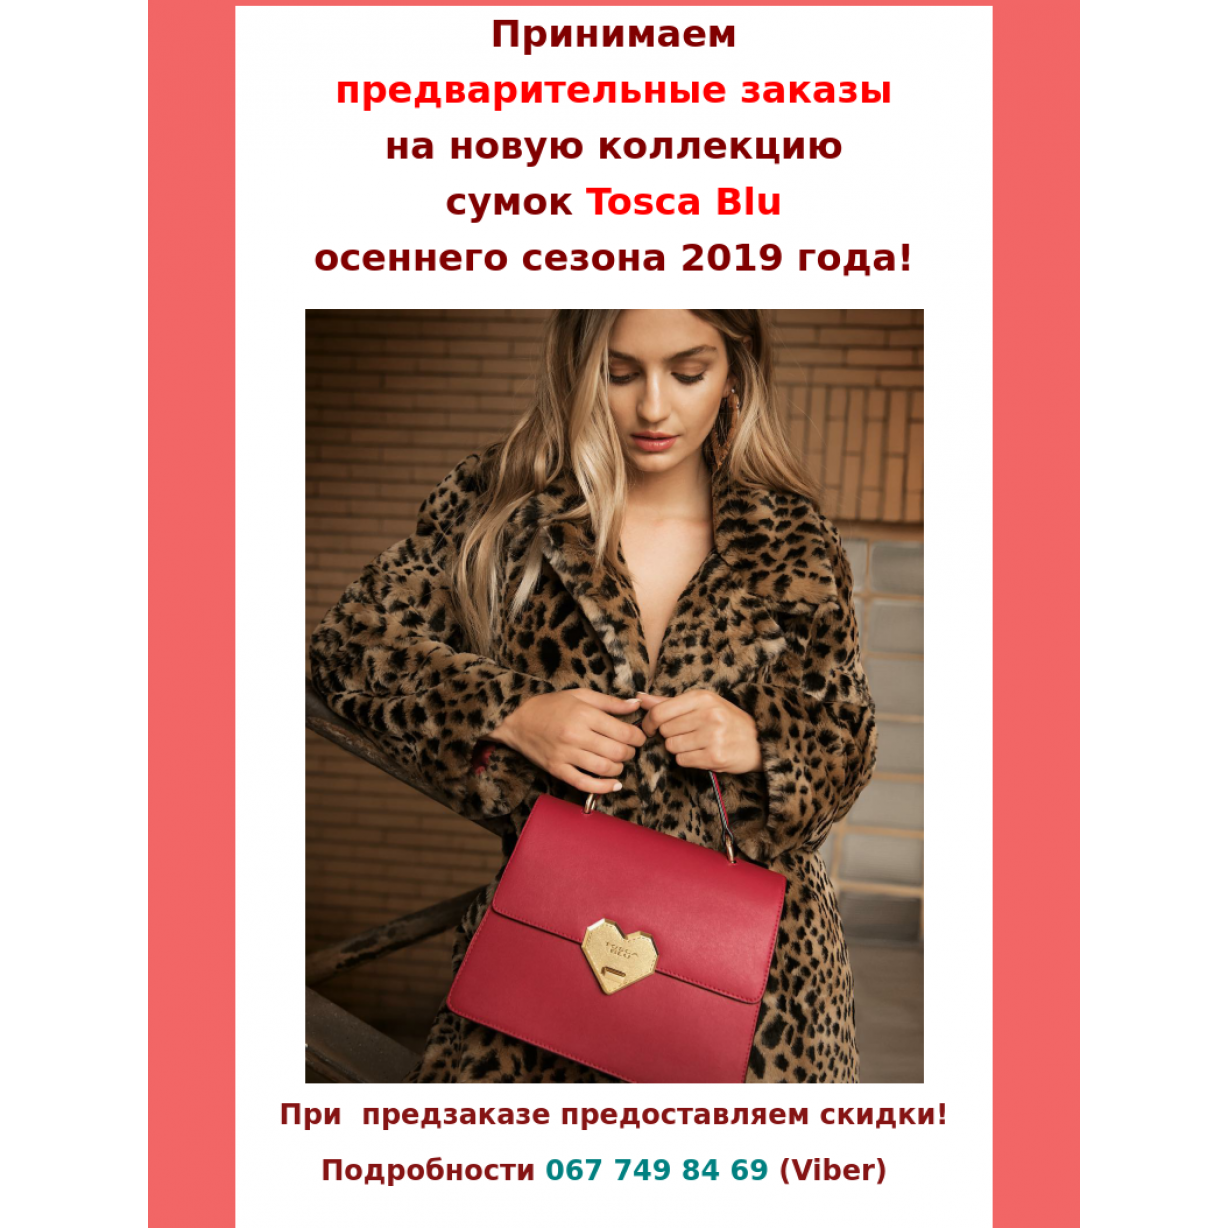 Предзаказ осенней коллекии сумок Tosca Blu 2019-2020 г.г.! 